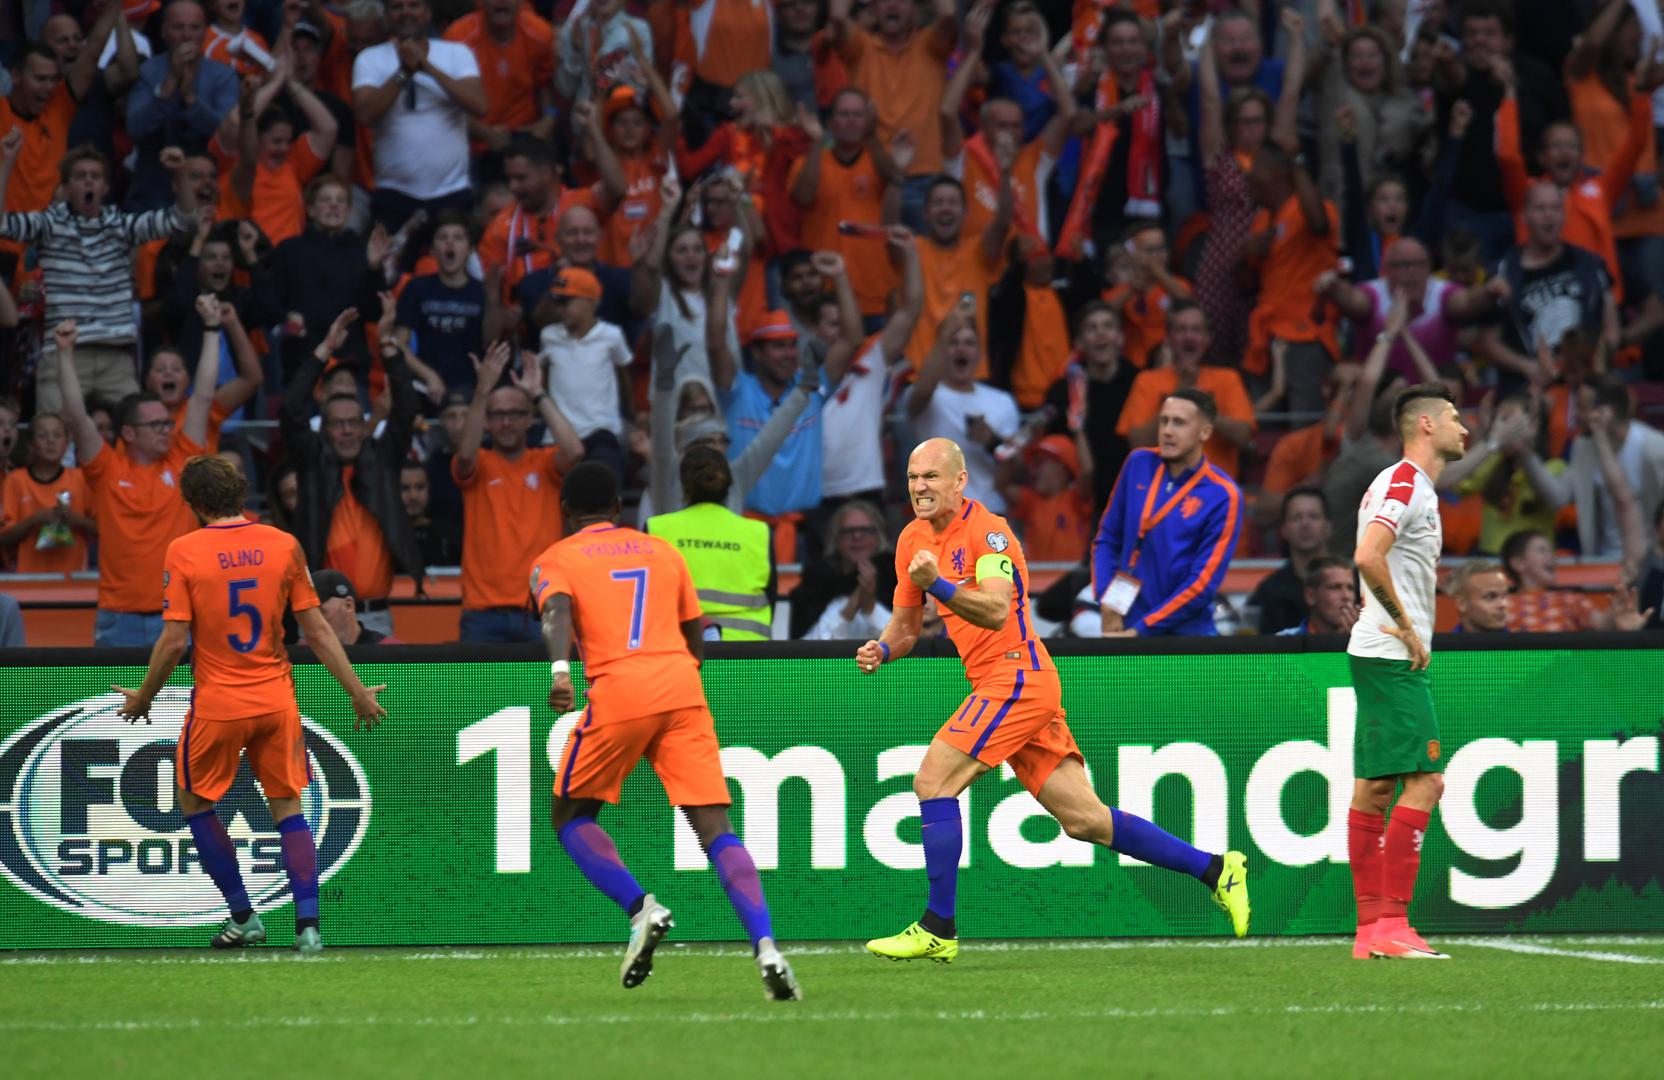 Nizozemska reprezentacija i dalje tone. Nakon što nije uspjela izboriti nastup na Euru u Francuskoj neće putovati niti u Rusiju. Francuska i Švedska bile su suviše snažne pa je Oranje zapelo na trećem mjestu skupine.